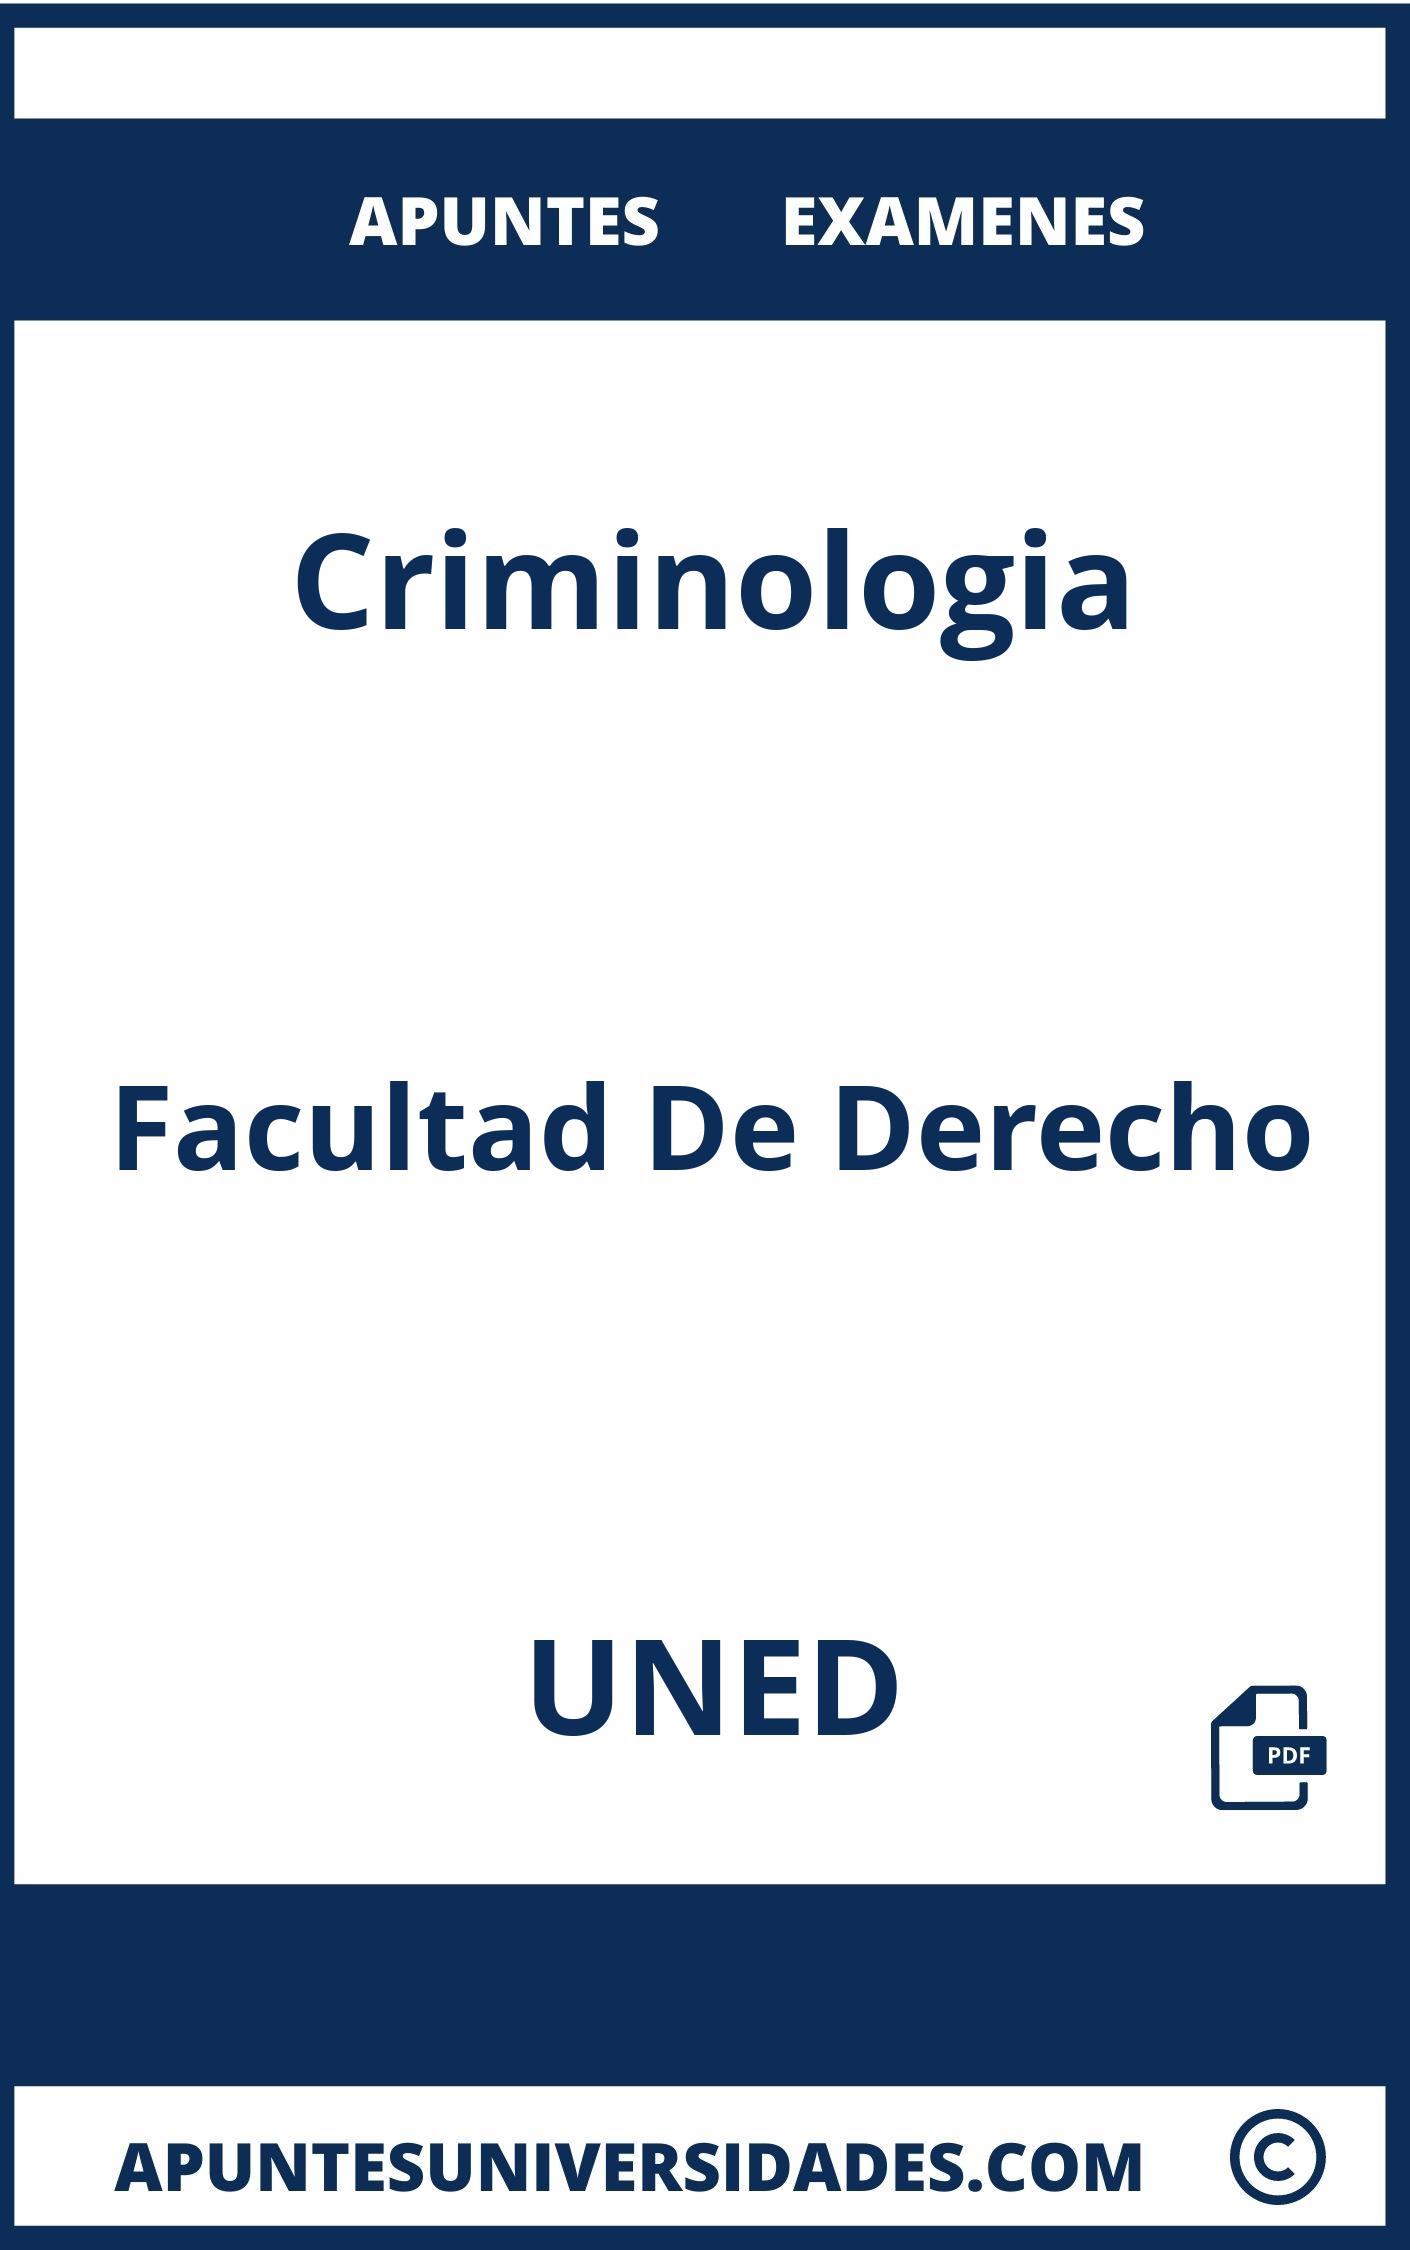 Examenes Criminologia UNED y Apuntes